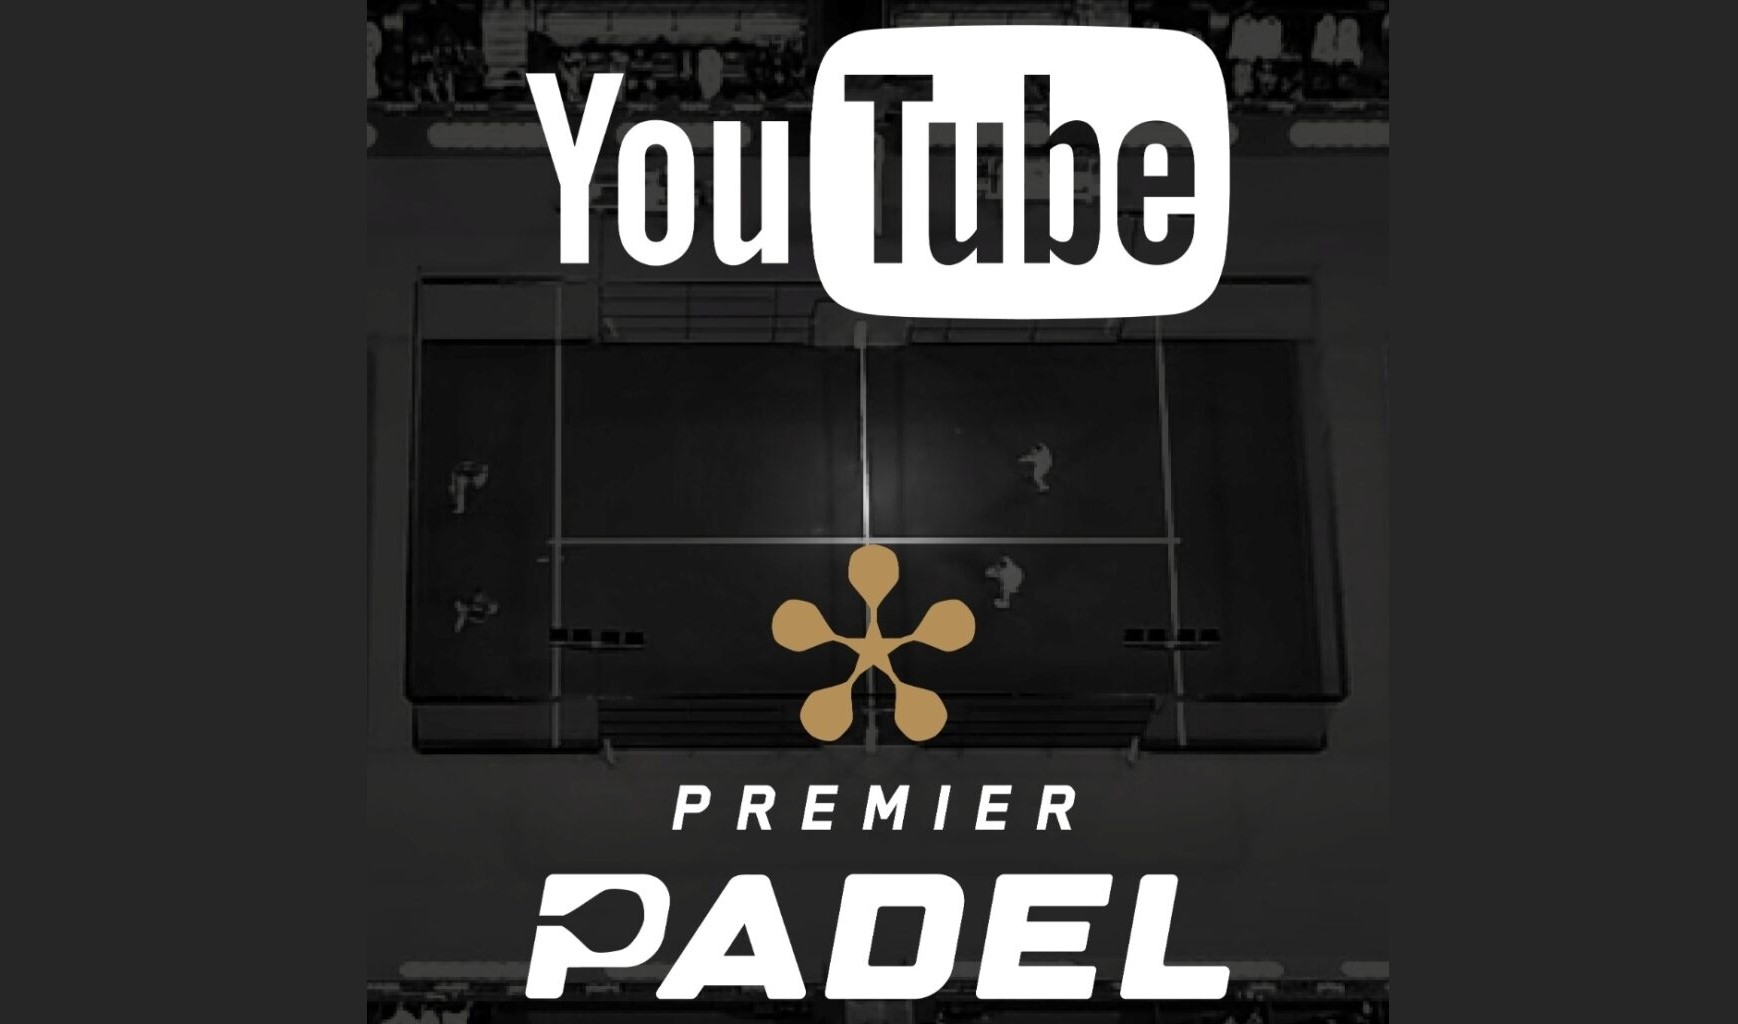 Premier Padel foi ao ar no Youtube na Espanha